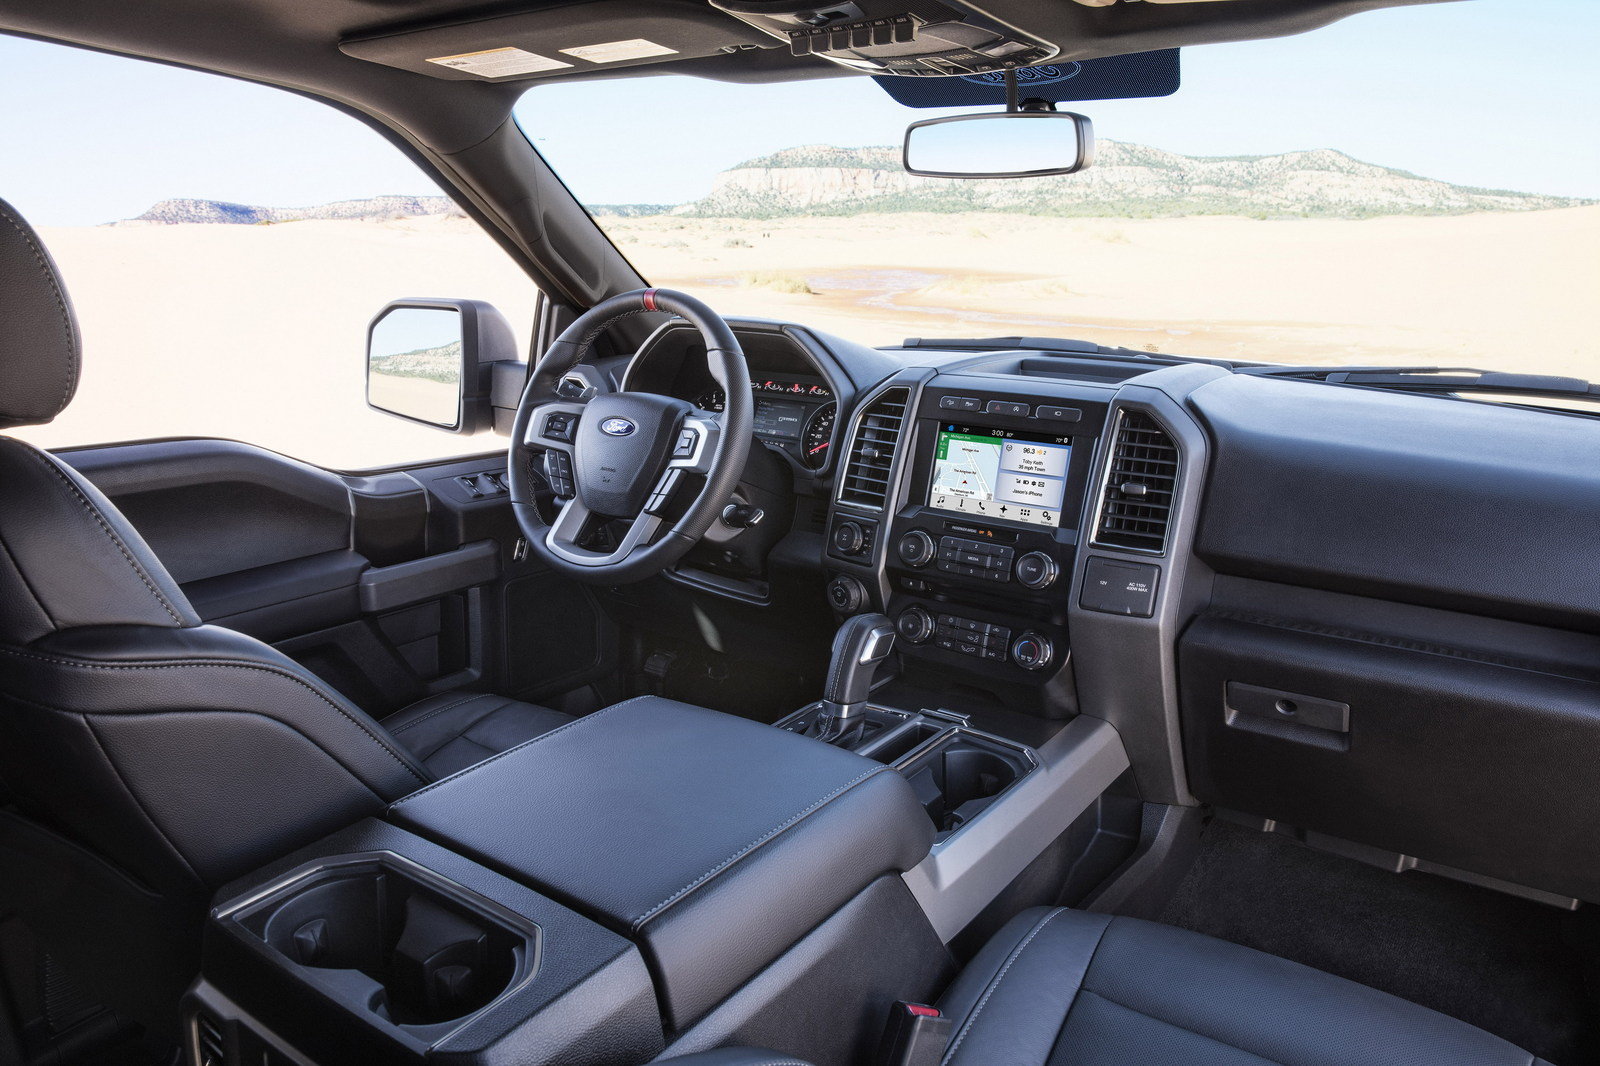 2019 Ford Ranger interior